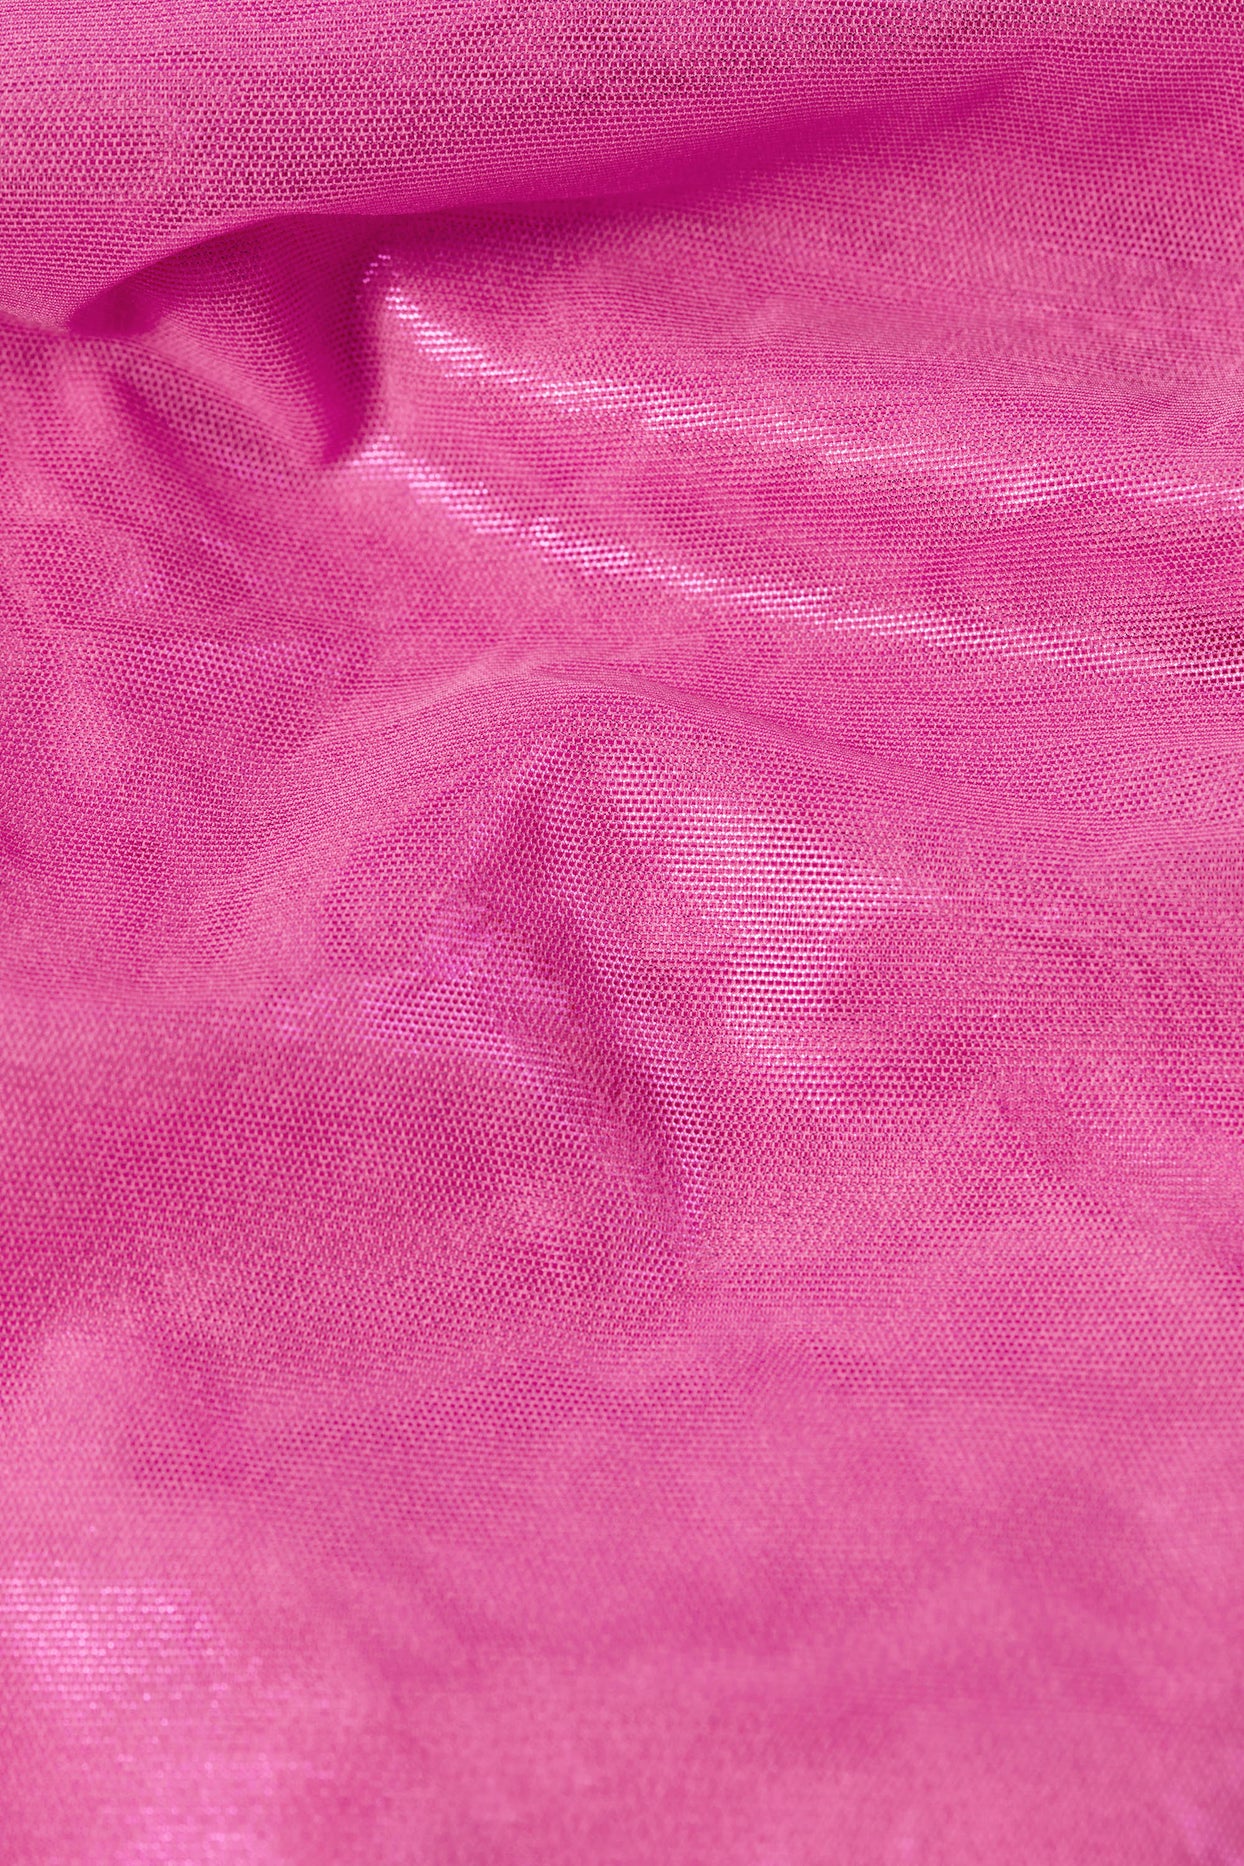 Pantalon évasé taille basse à volants métallisés en rose bubblegum